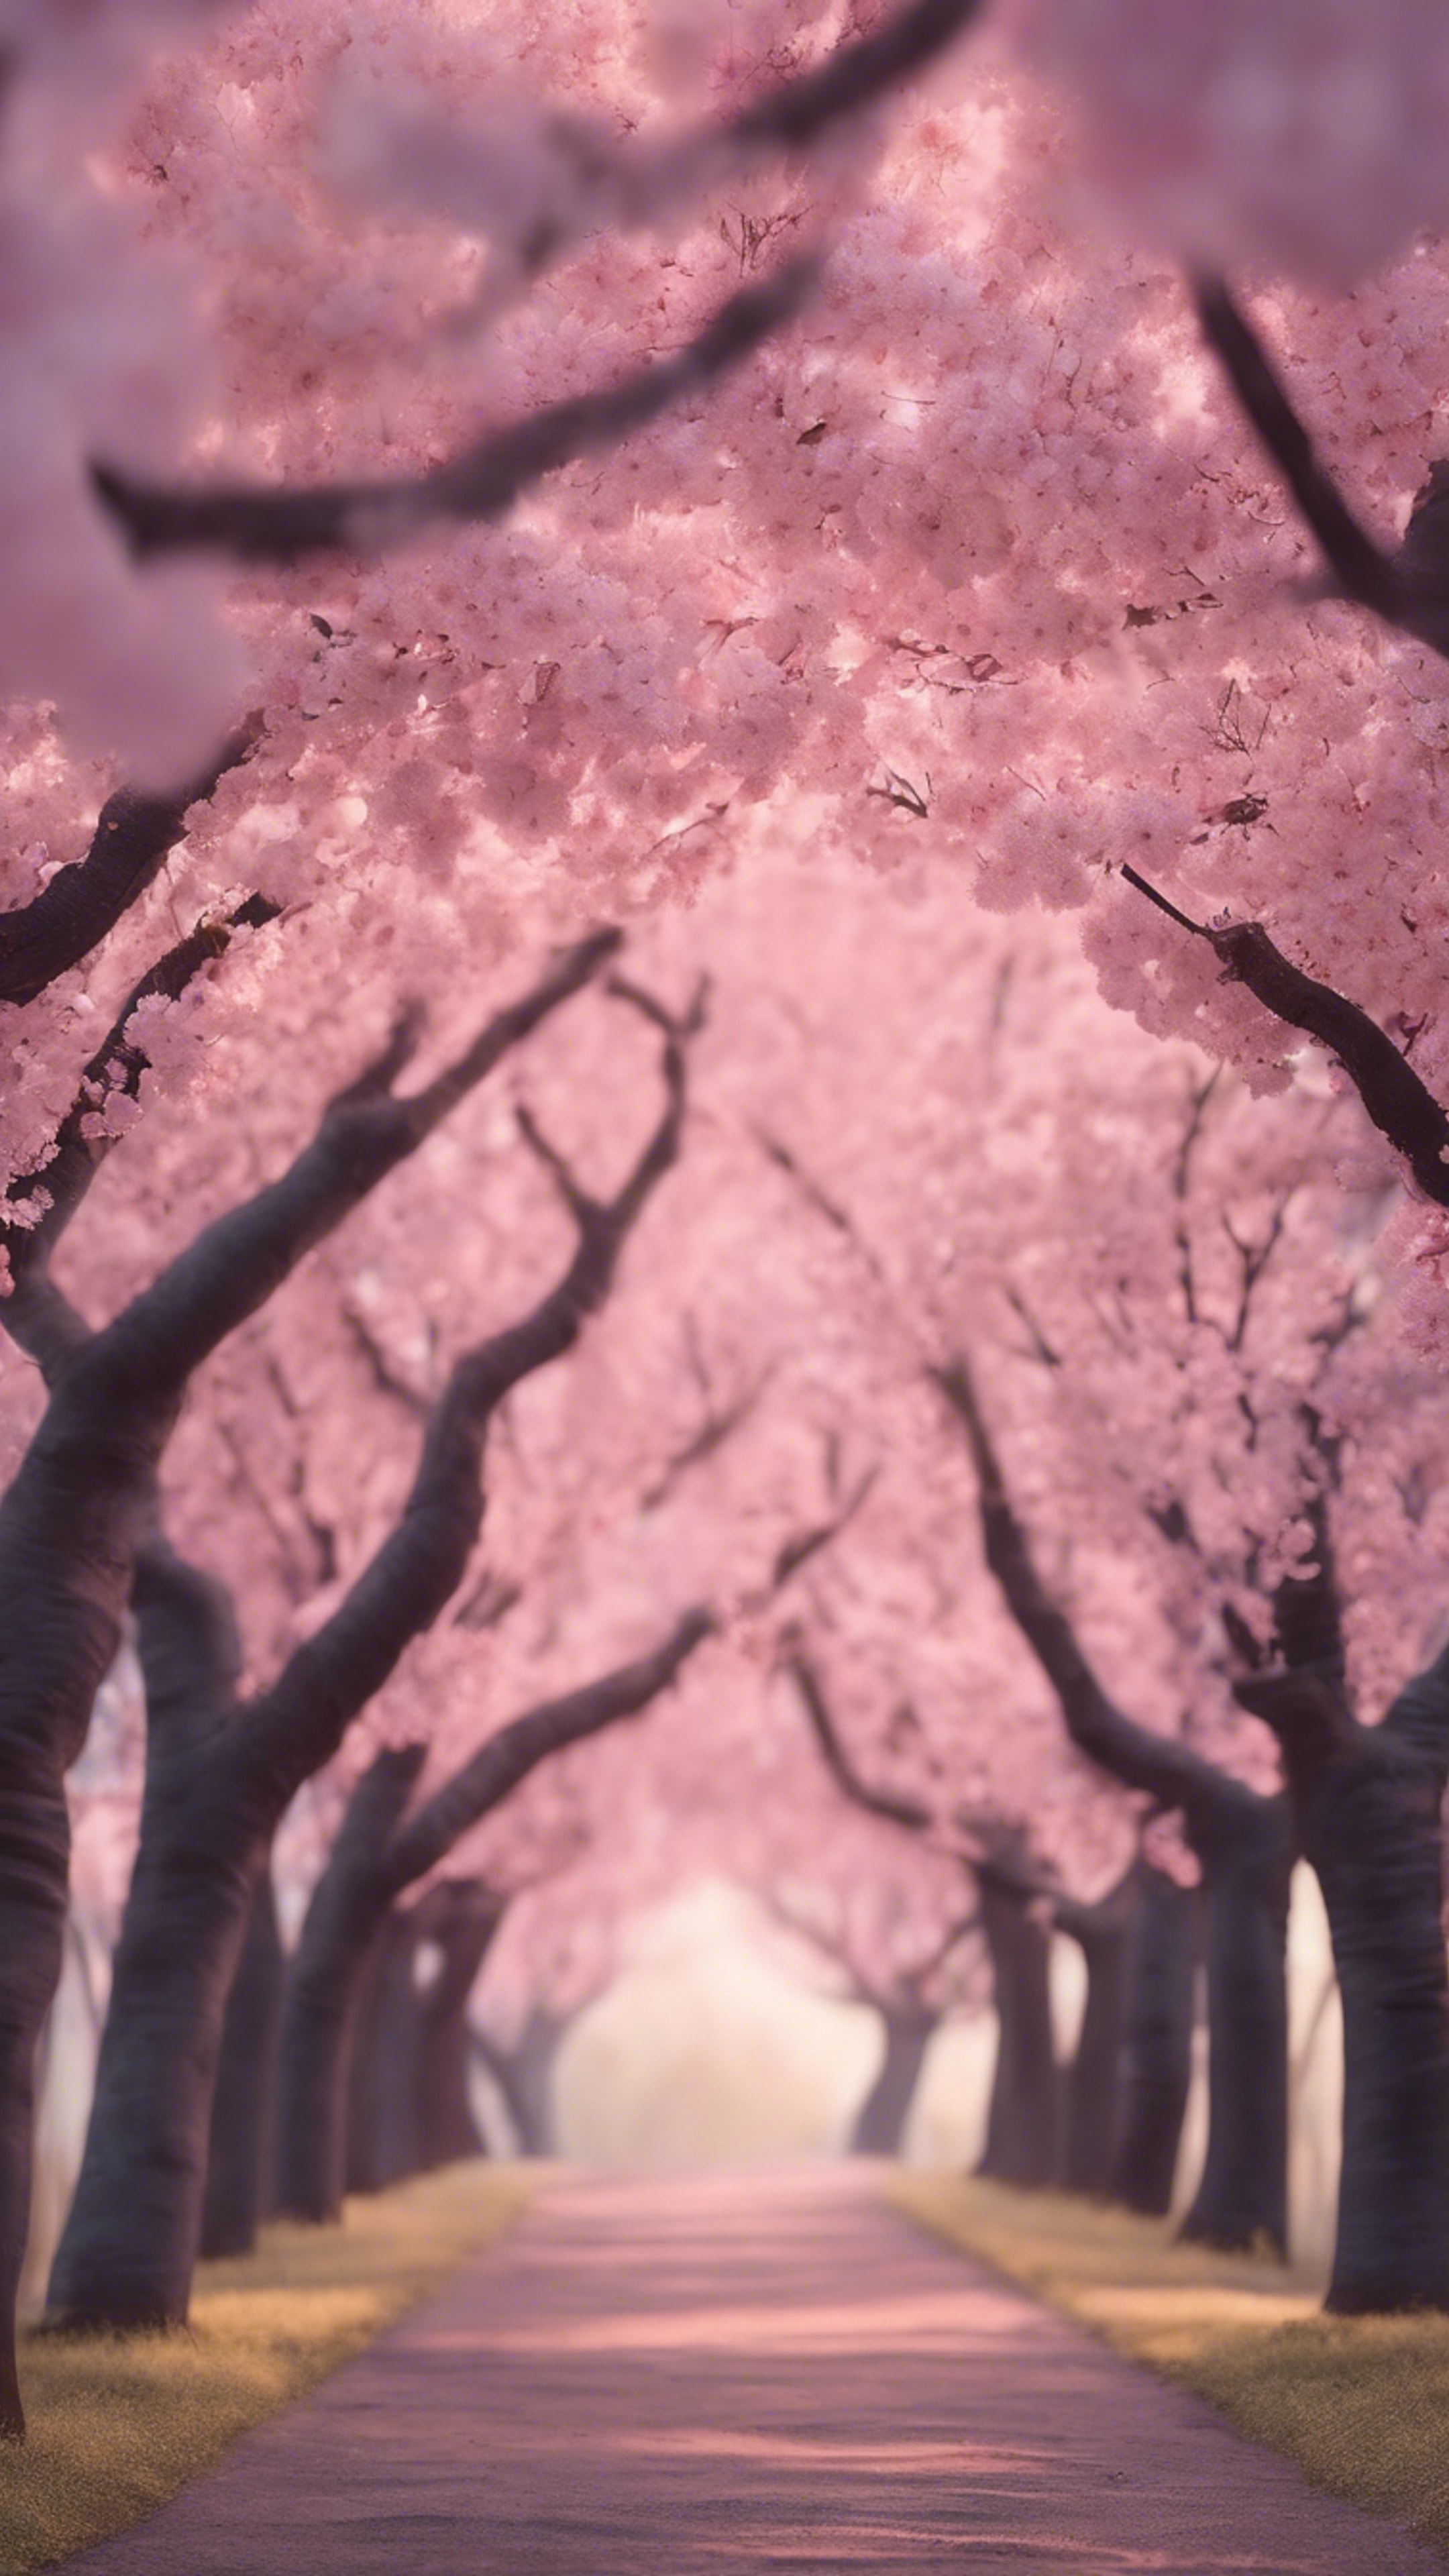 A magical dream landscape of a soft pink cherry blossom avenue under a romantic dusky sky. Sfondo[c79f6cc44b0c40cf871b]